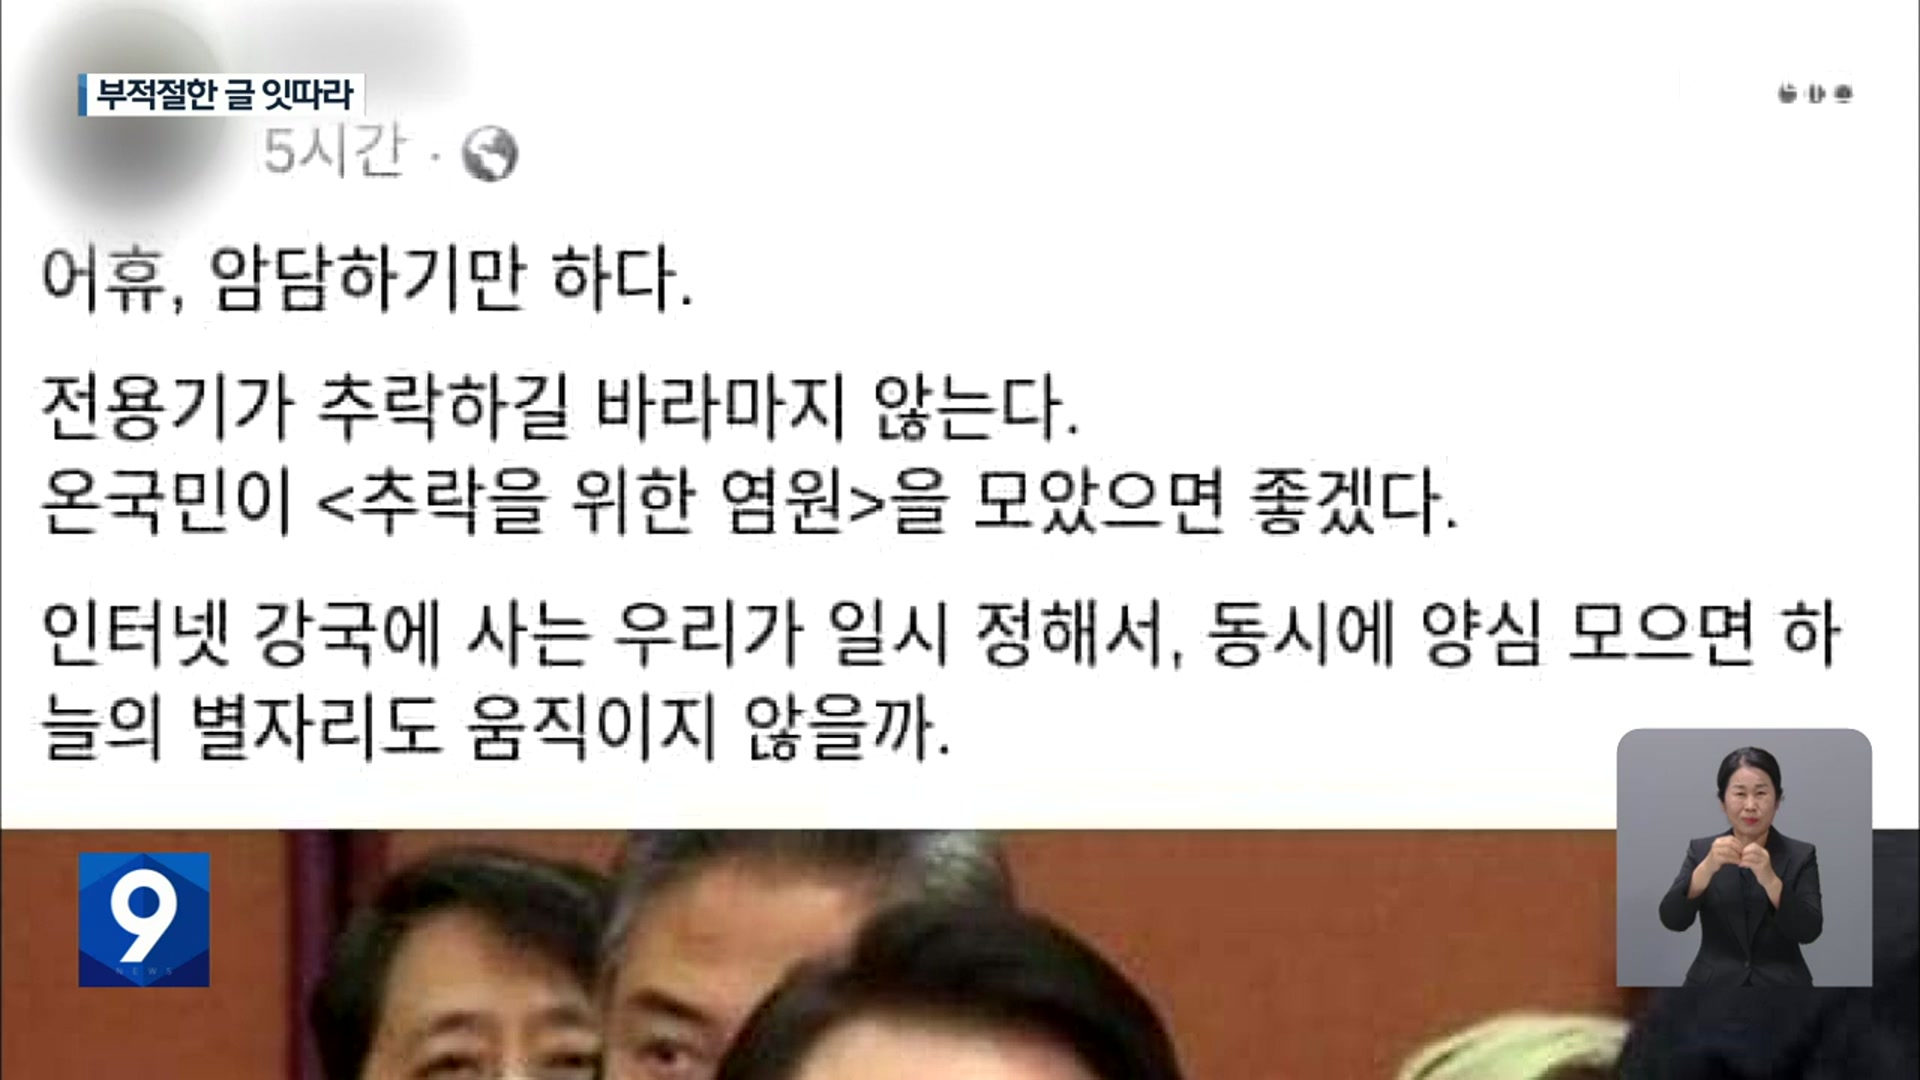 대전지역 신부들 ‘대통령 전용기 추락’ 기도 글·합성사진 올려 파문